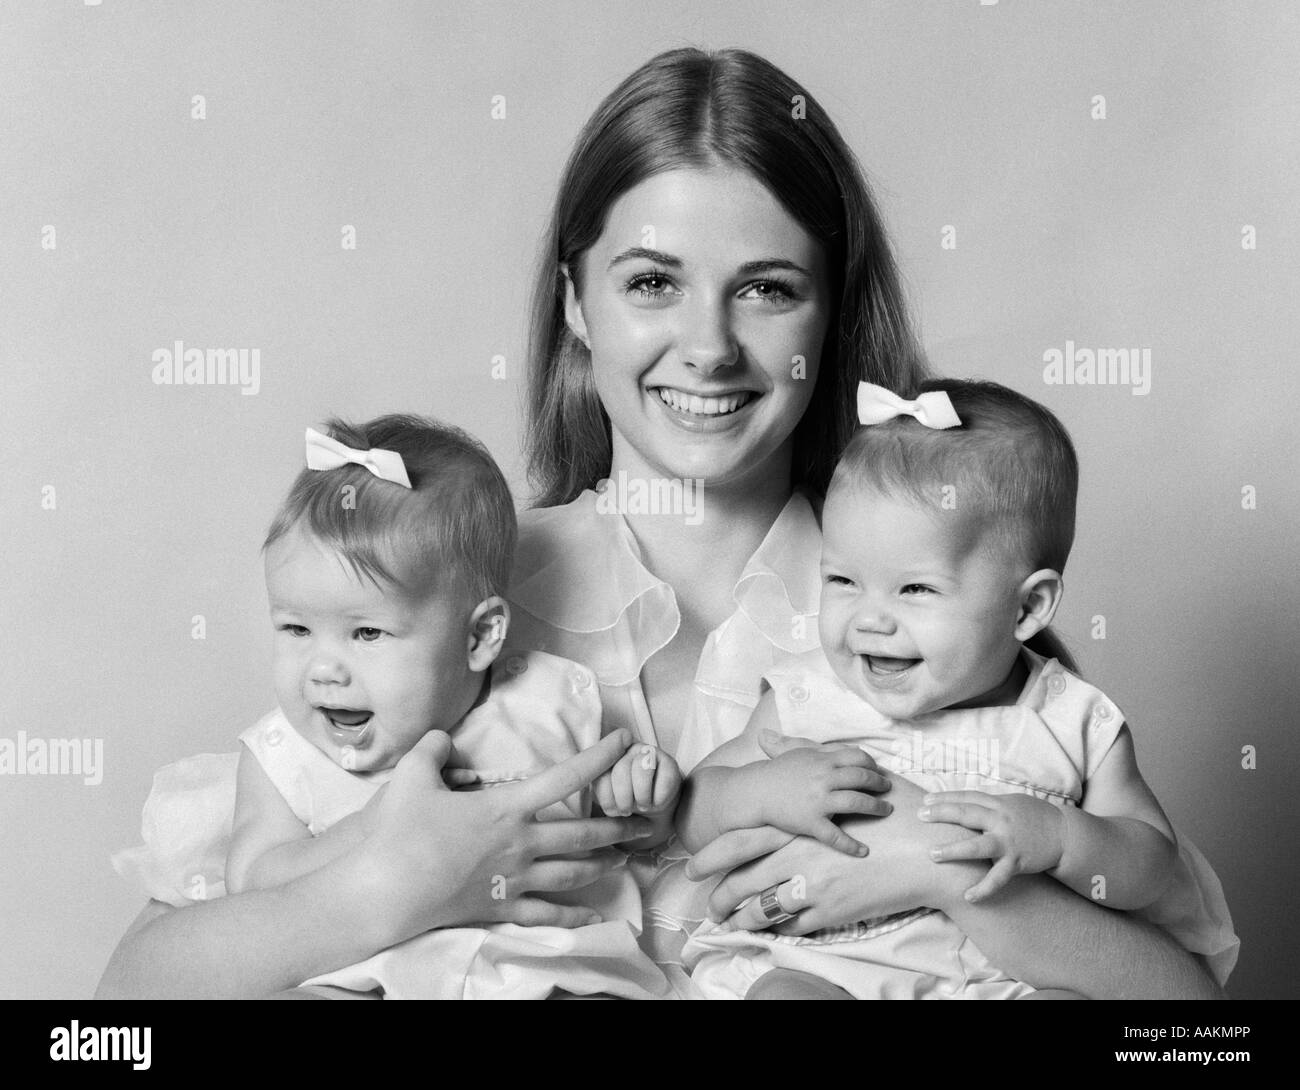 1970 Retrato de madre sonriente con los brazos alrededor de dos niñas con moños EN EL PELO mirando a la cámara Foto de stock